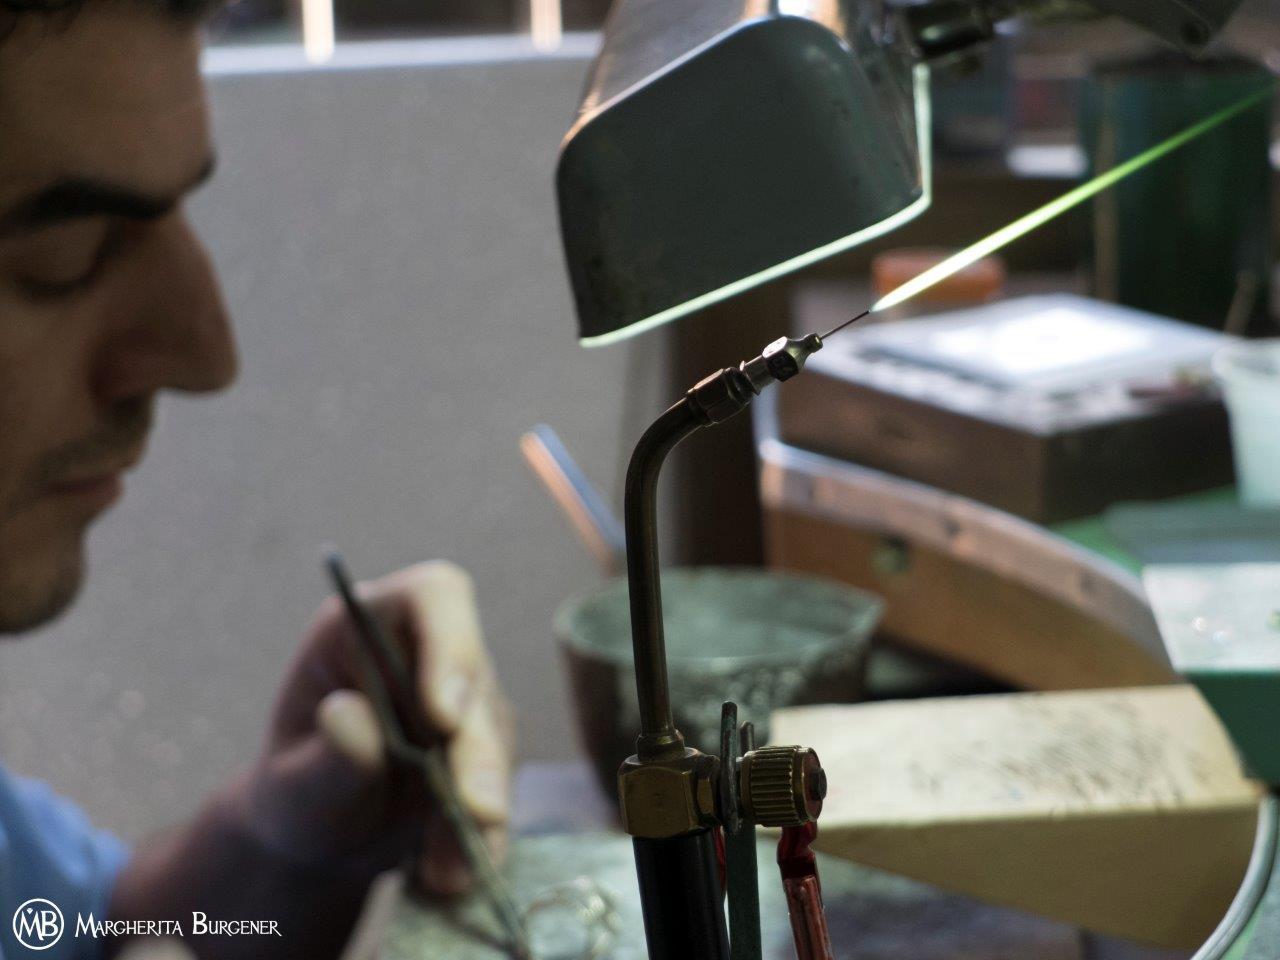 La boucle traditionnelle utilisée par les professionnels de la bijouterie, gravée de l'inscription et gravée au laser.
avec le nom et le logo Margherita Burgener.
Un outil intéressant et utile pour tous les amateurs et connaisseurs de bijoux.
Une